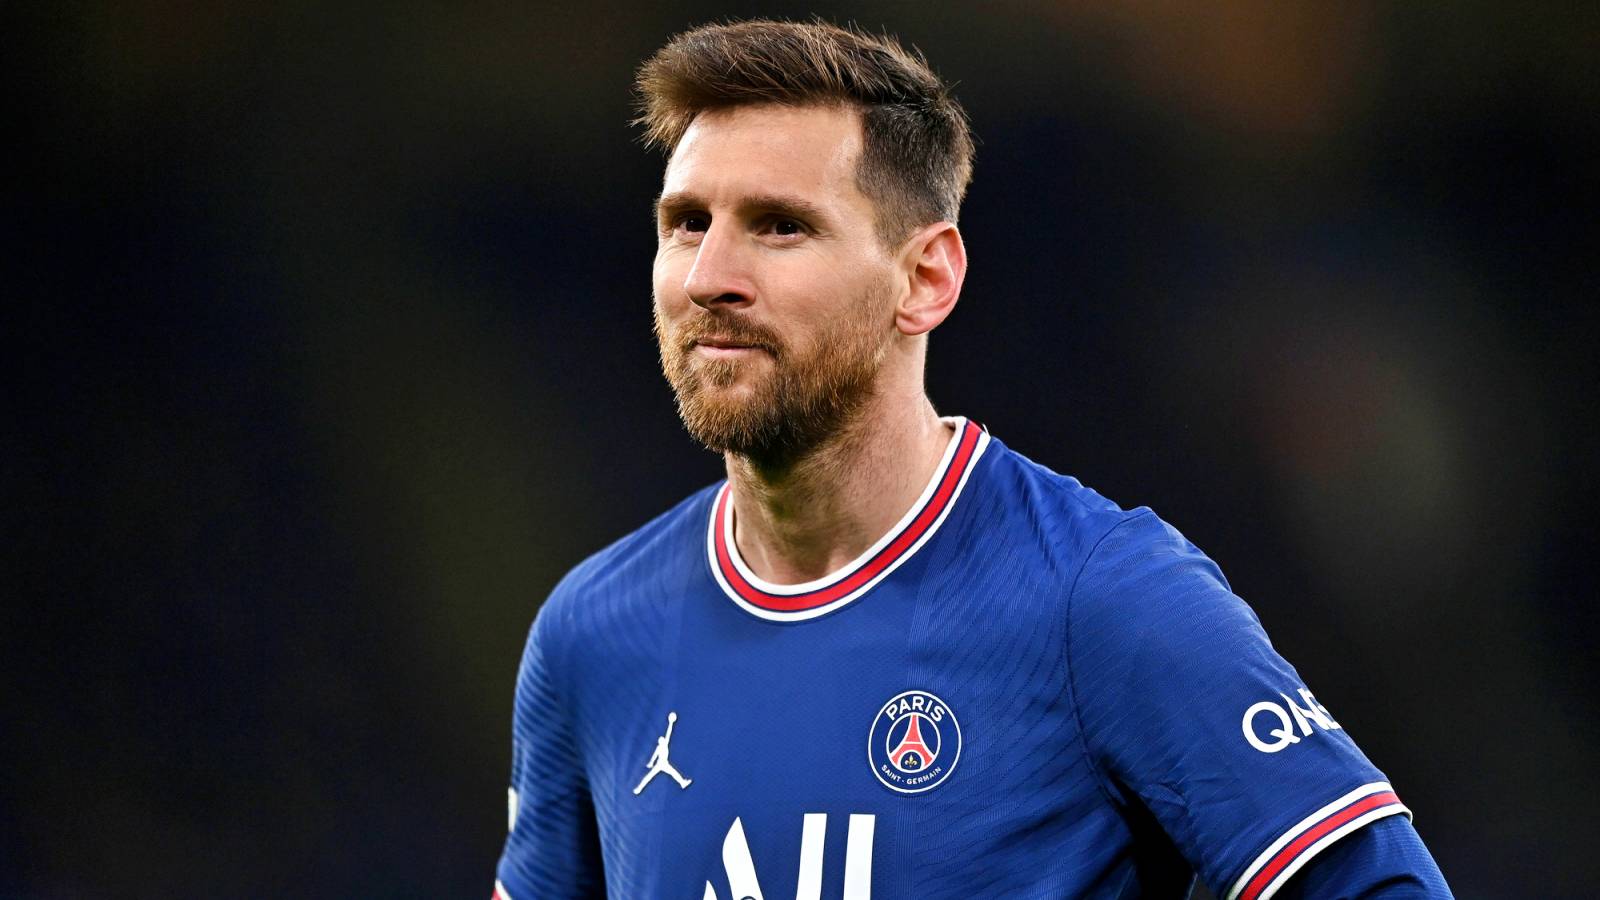 Lionel Messi uzyskał POZYTYWNY wynik testu na obecność COVID-19 PSG ogłosiło